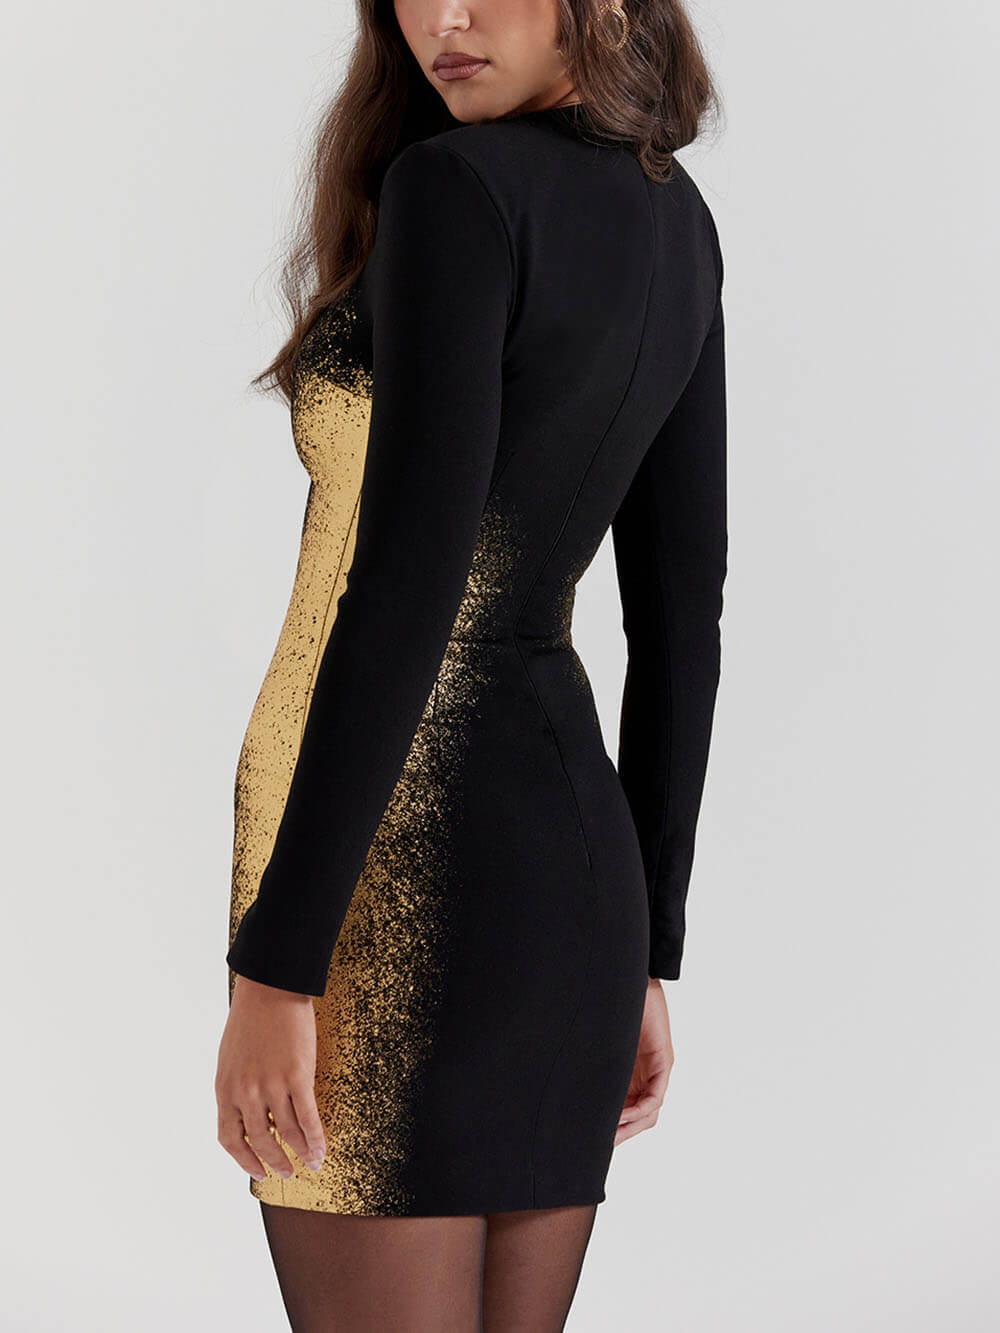 Μίνι φόρεμα με στάμπα μαύρο & χρυσό